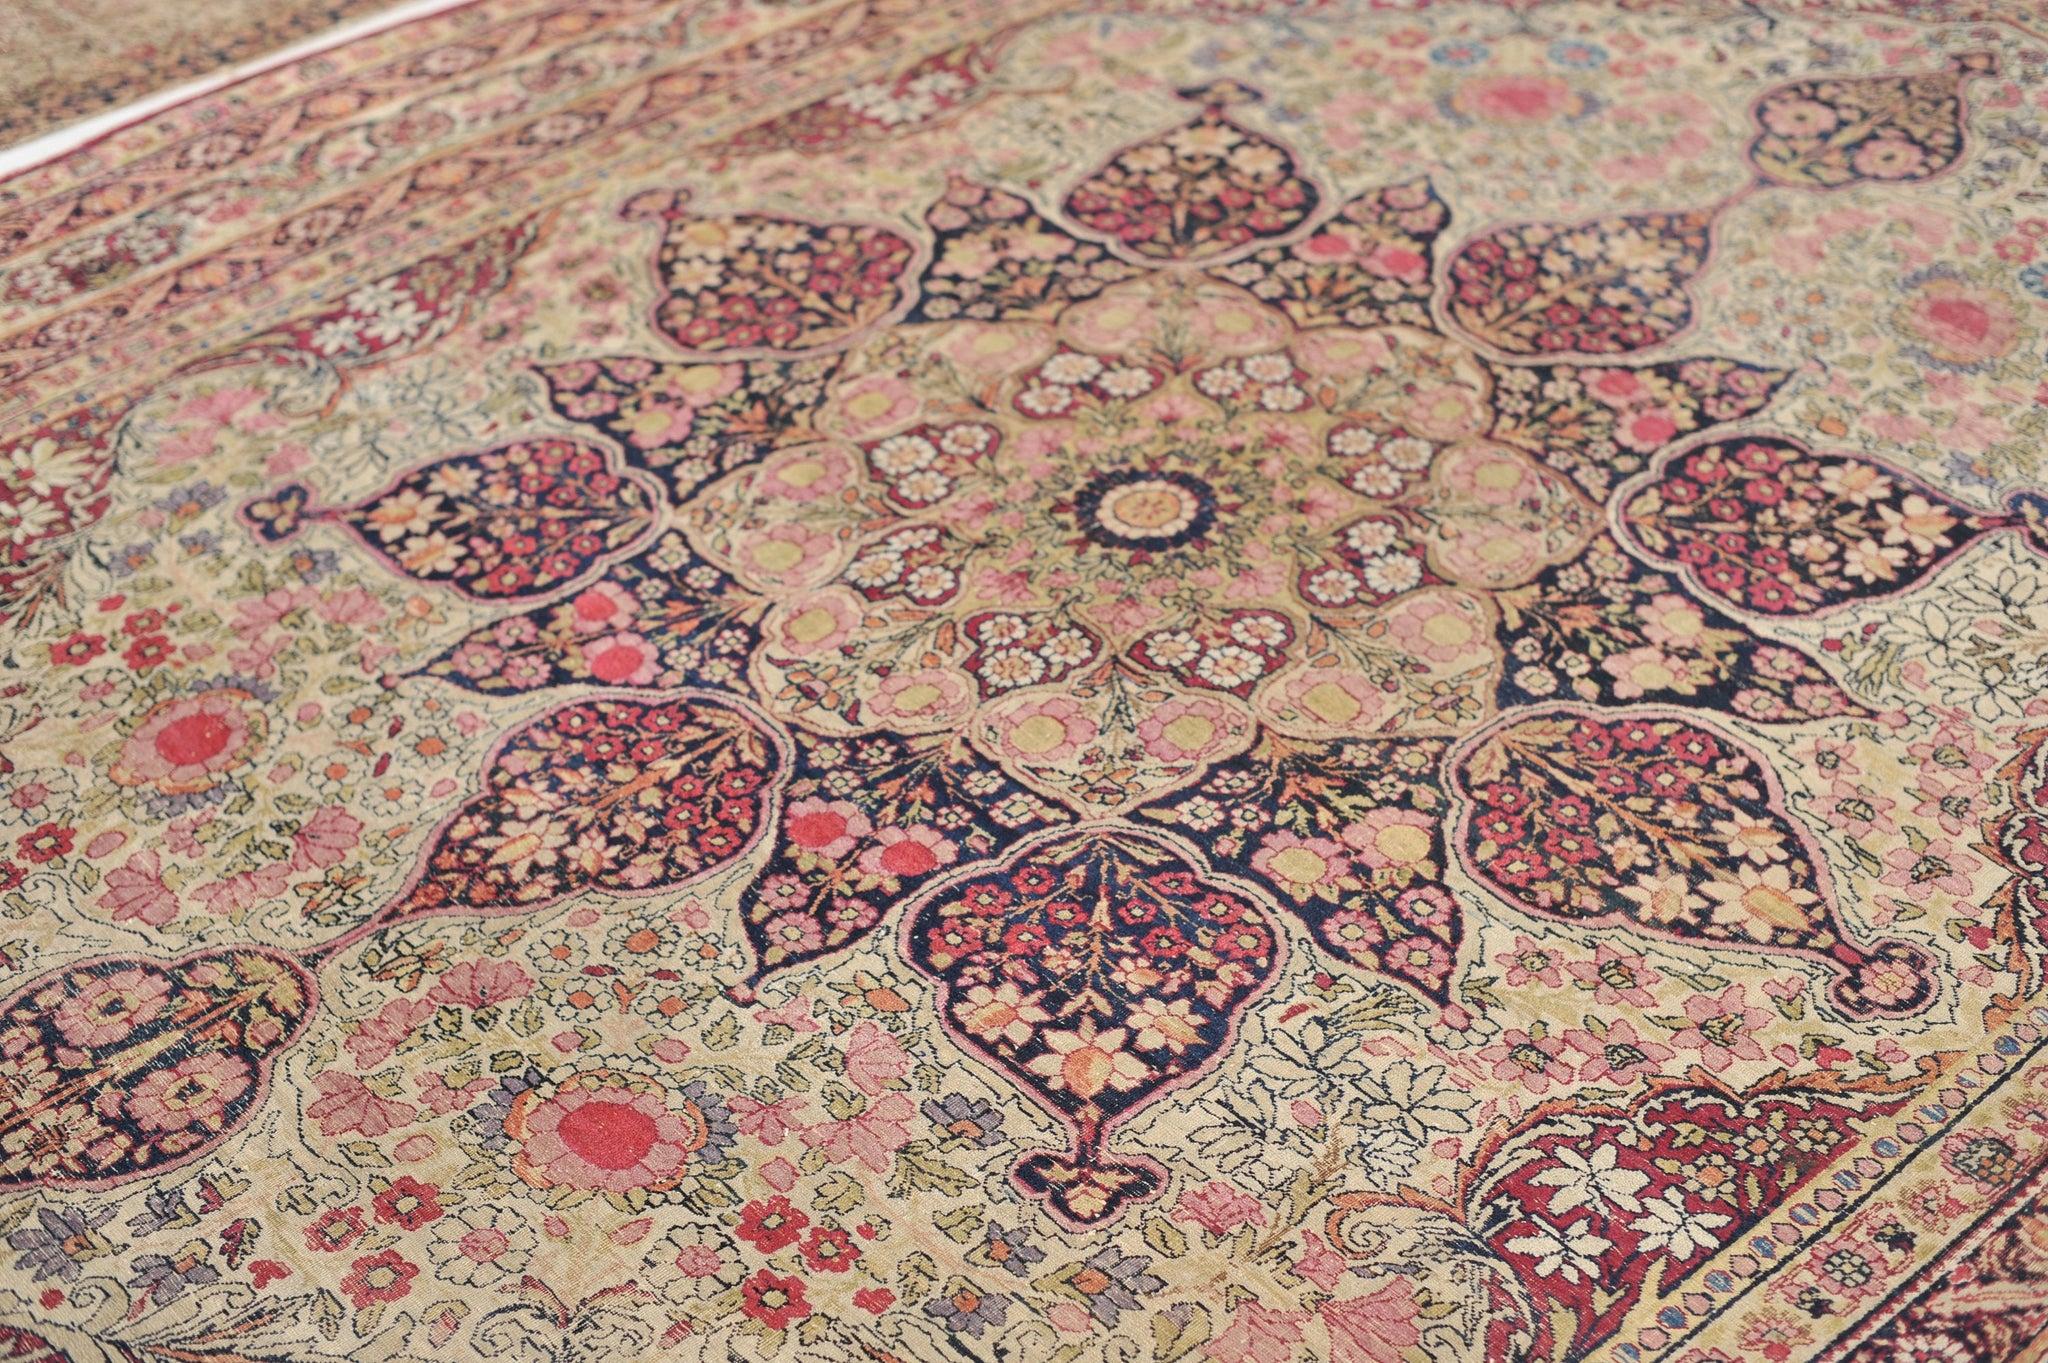 Laine Magnifique tapis ancien à motifs botaniques et architecturaux, datant des années 1890 environ en vente